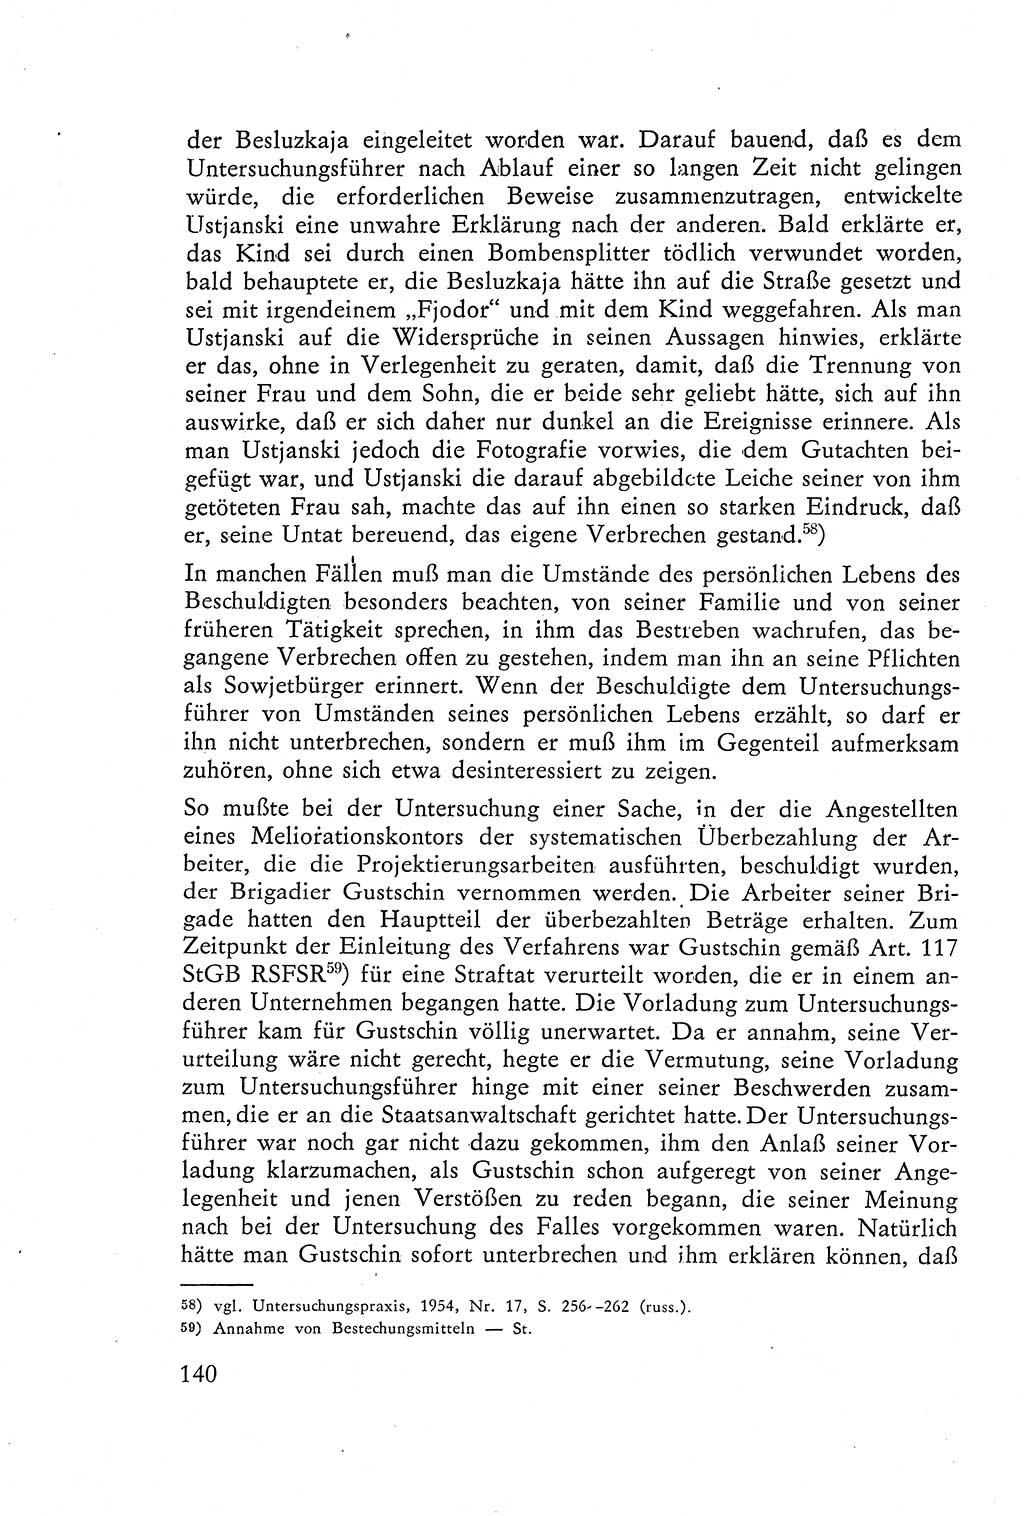 Die Vernehmung [Deutsche Demokratische Republik (DDR)] 1960, Seite 140 (Vern. DDR 1960, S. 140)